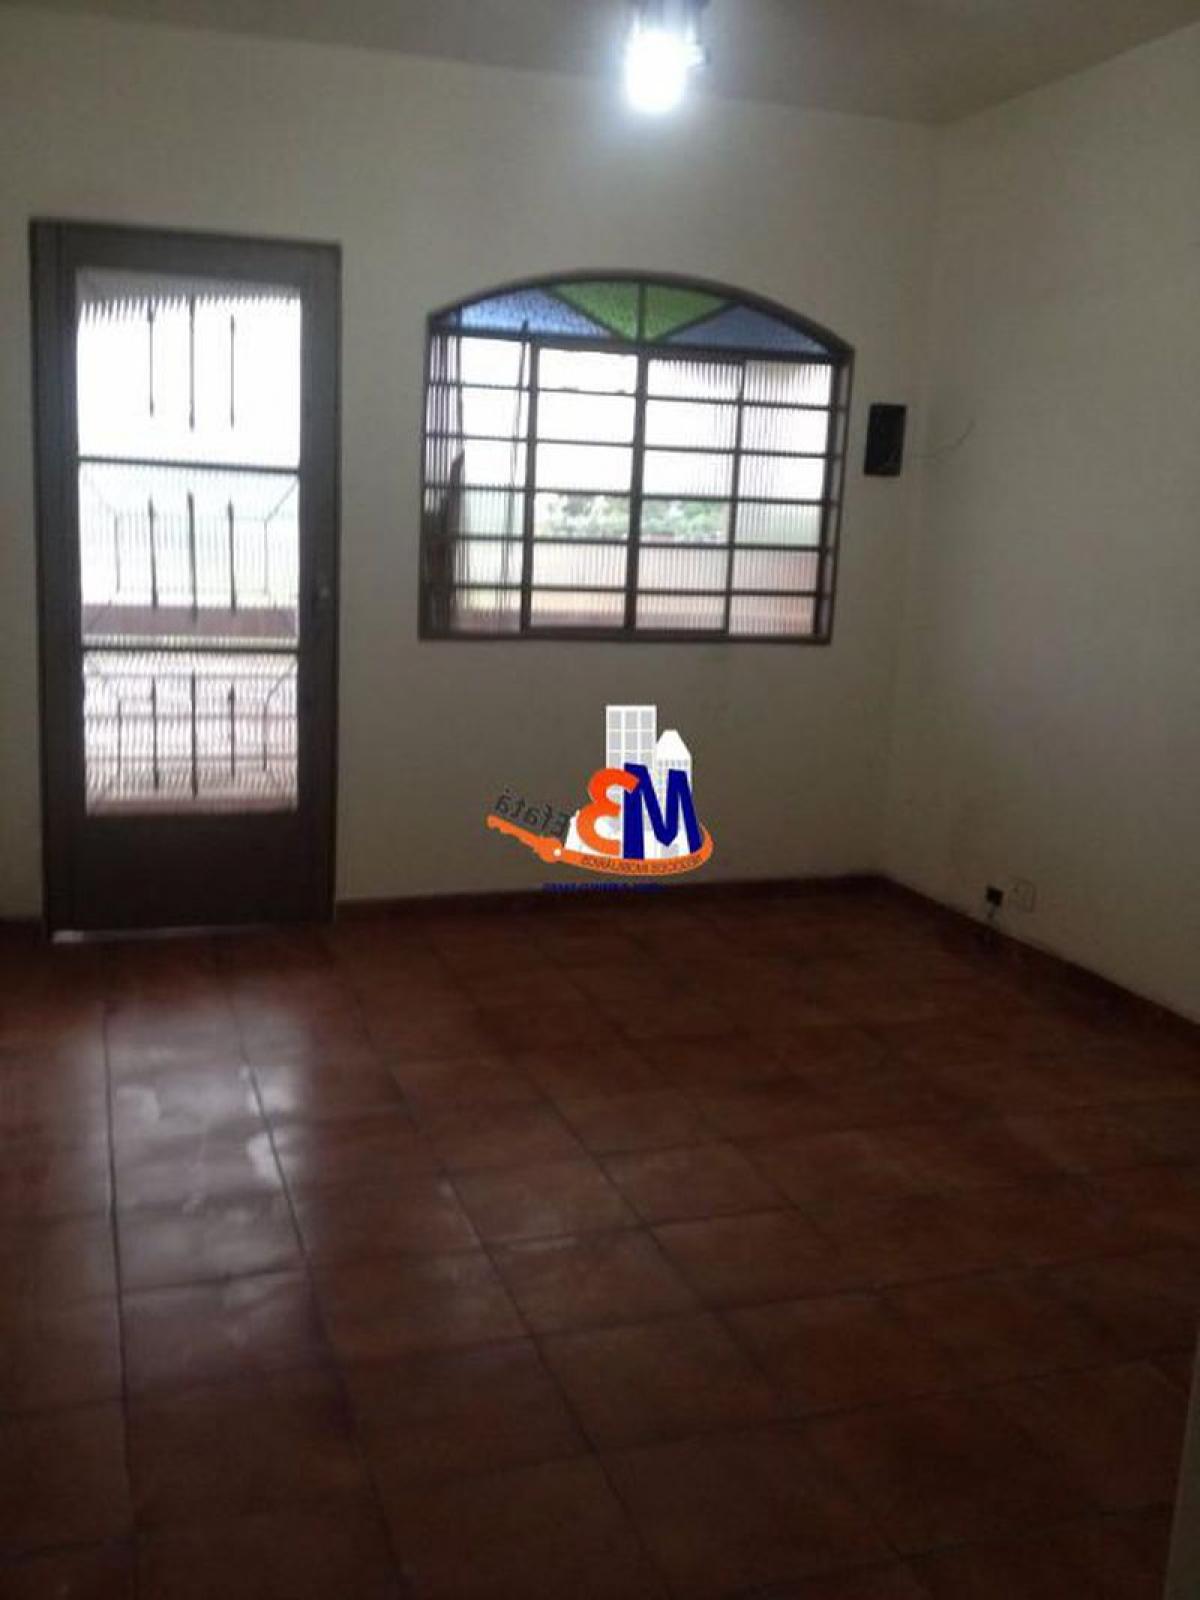 Picture of Home For Sale in Taboao Da Serra, Sao Paulo, Brazil